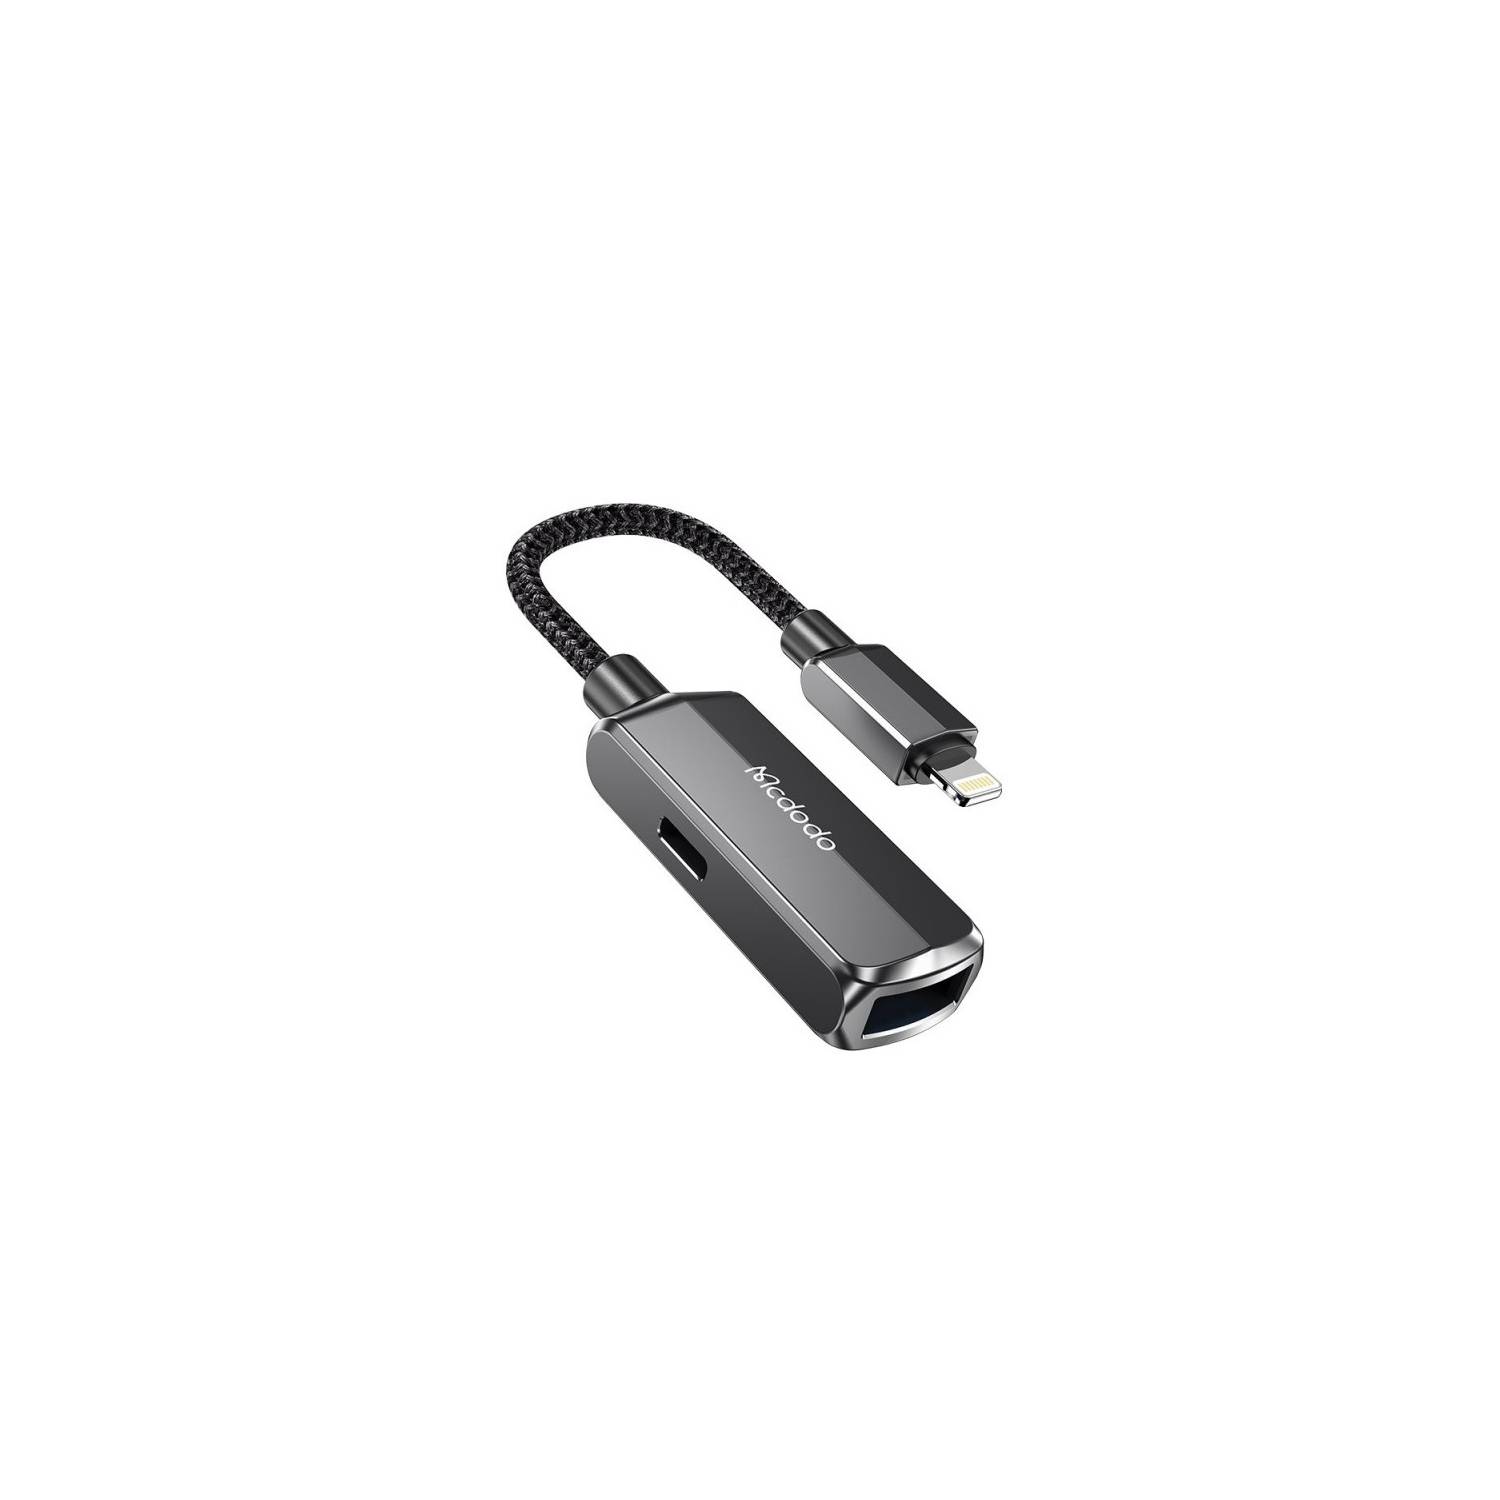 Adaptador USB C a Lightning para Iphone o Ipad IMPORTADO